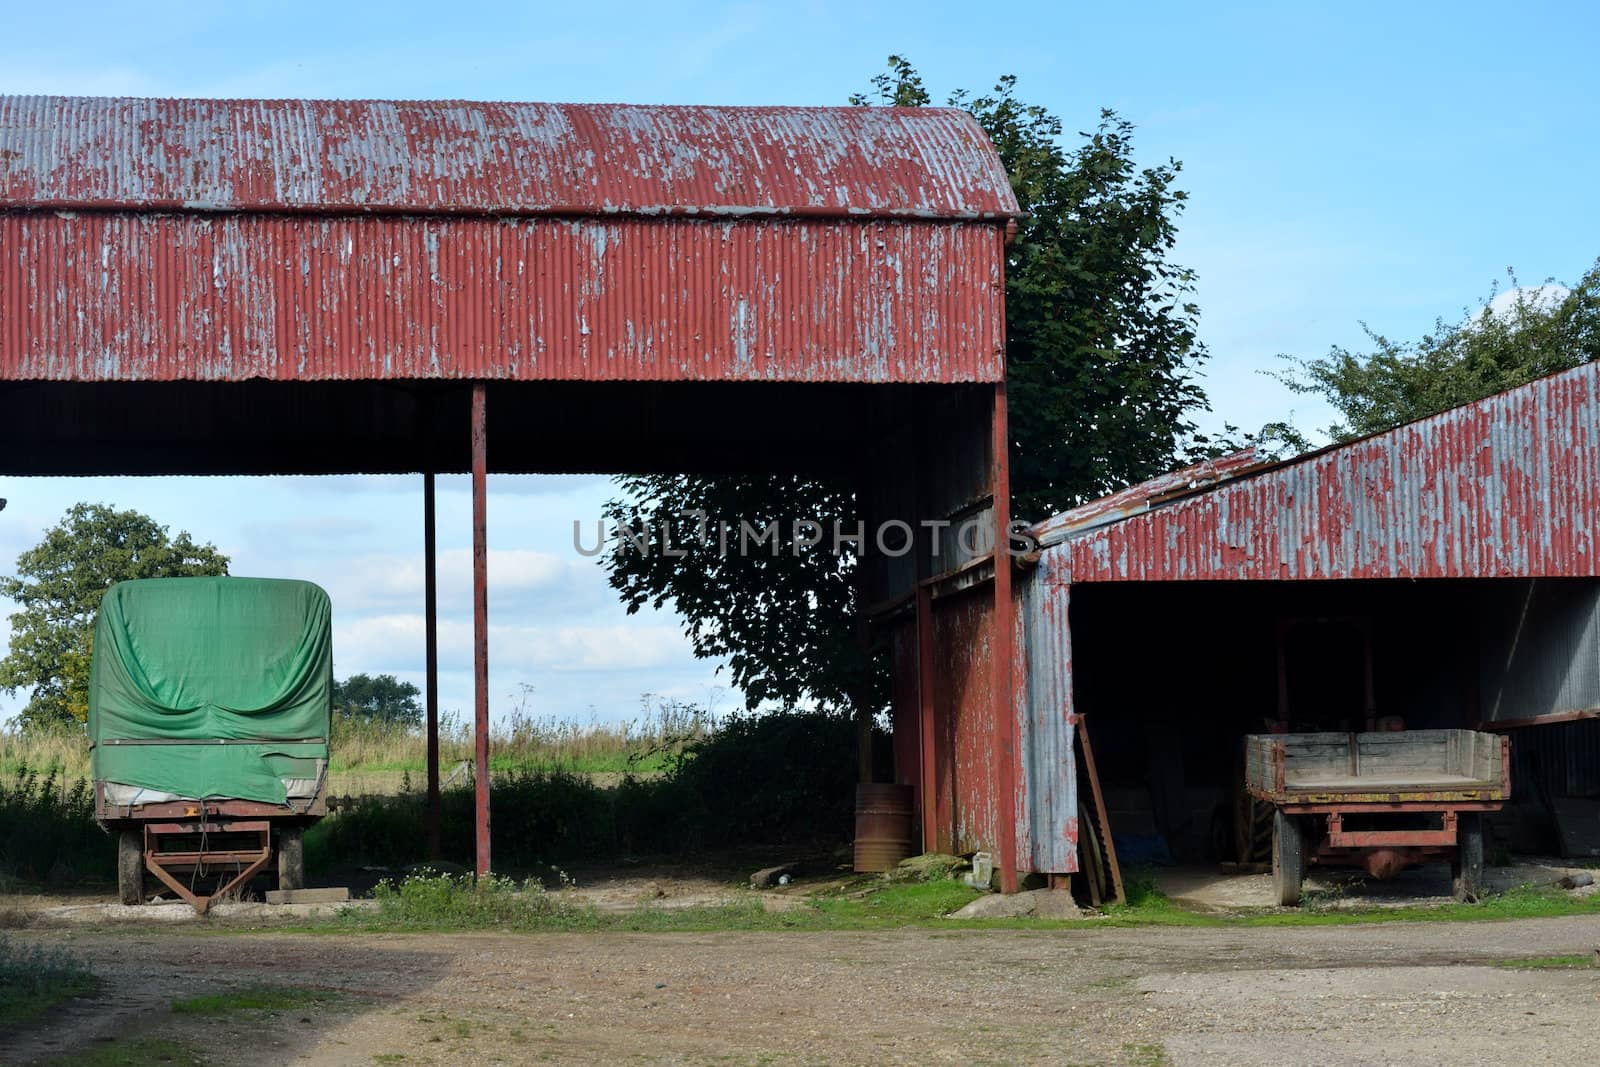 Old Rusty Barns